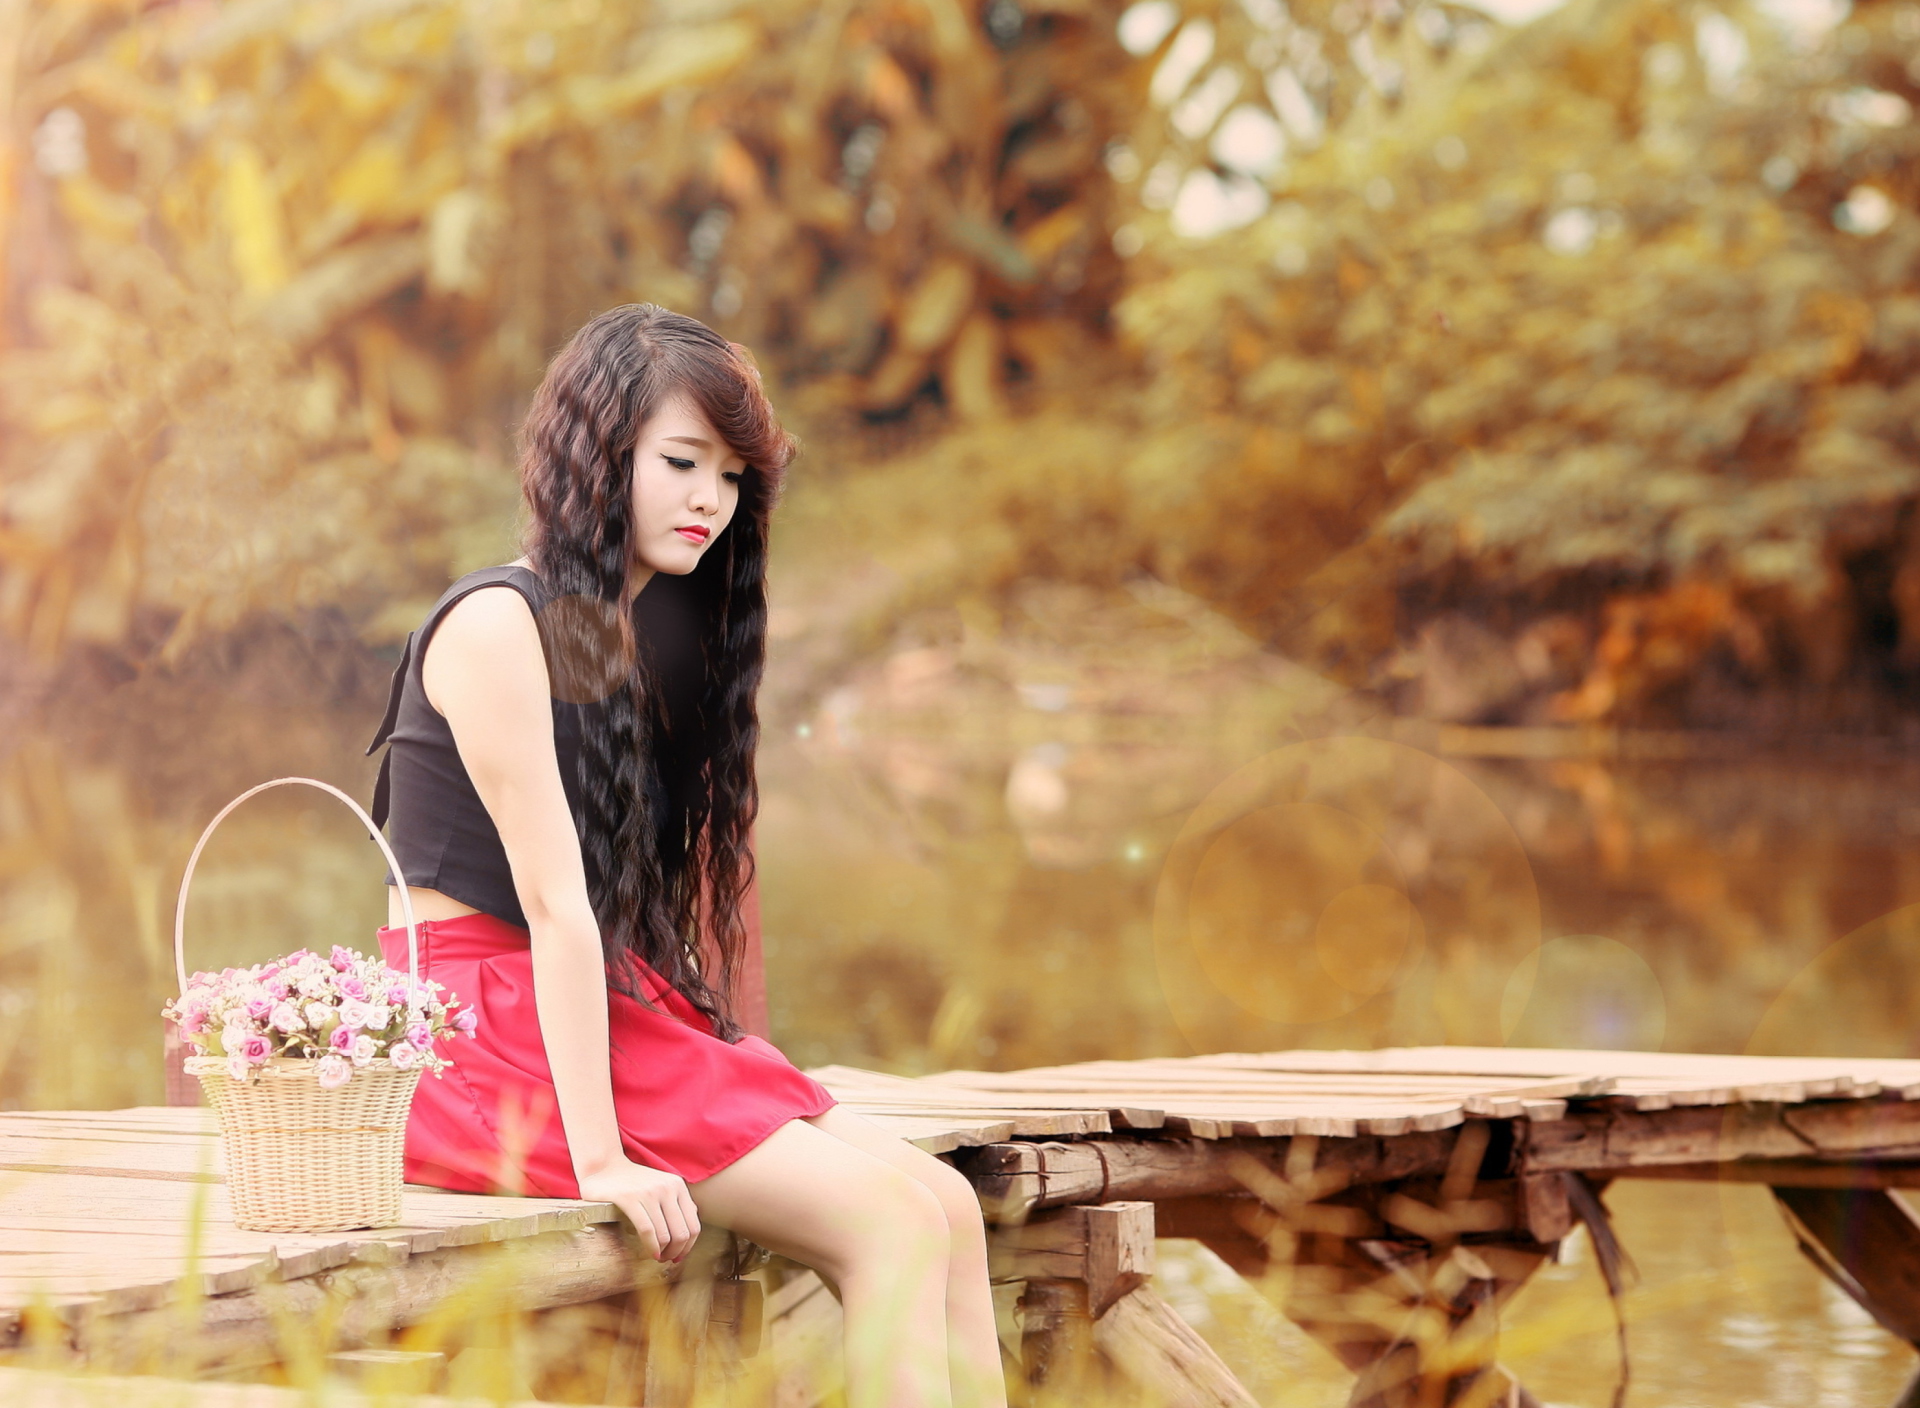 Обои Sad Asian Girl With Flower Basket 1920x1408